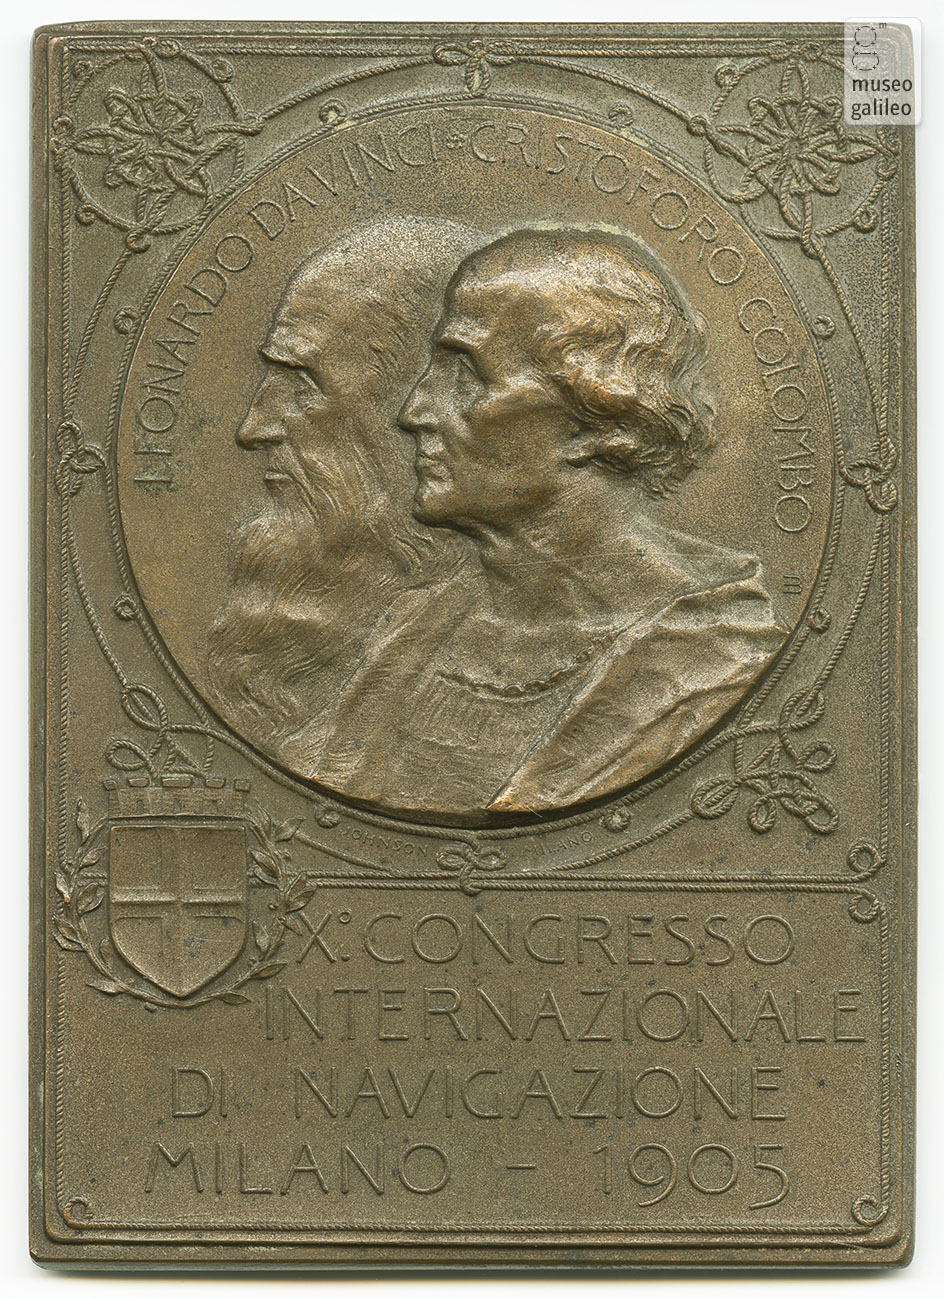 Congresso Internazionale di Navigazione (Milano, 1905) - diritto